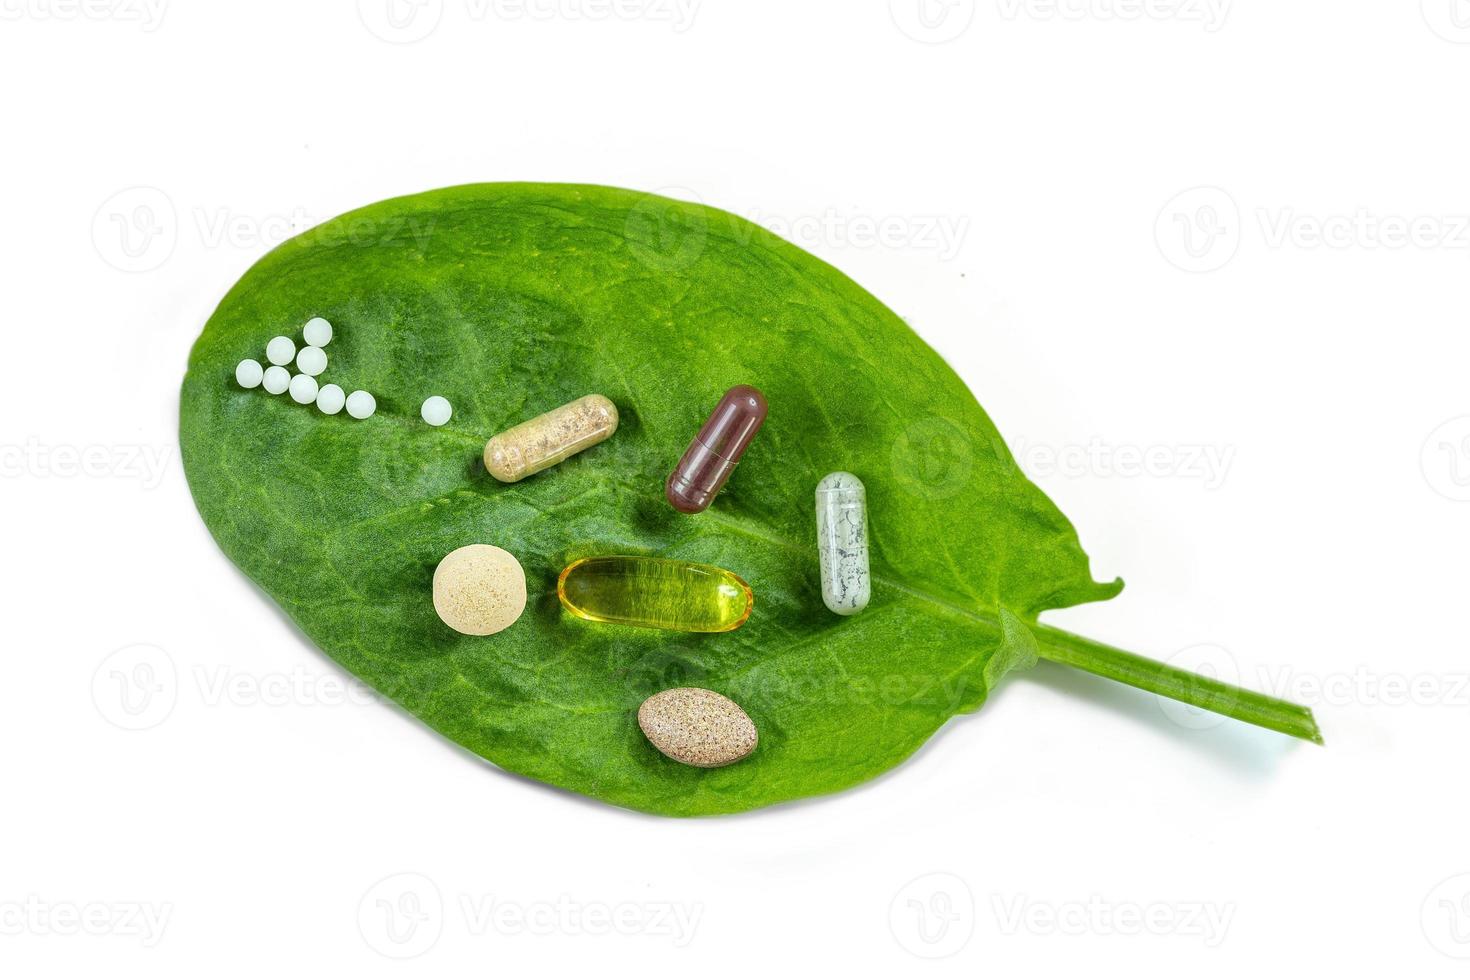 homeopatía - un concepto de homeopatía con medicina homeopática y complemento alimenticio en hojas verdes foto